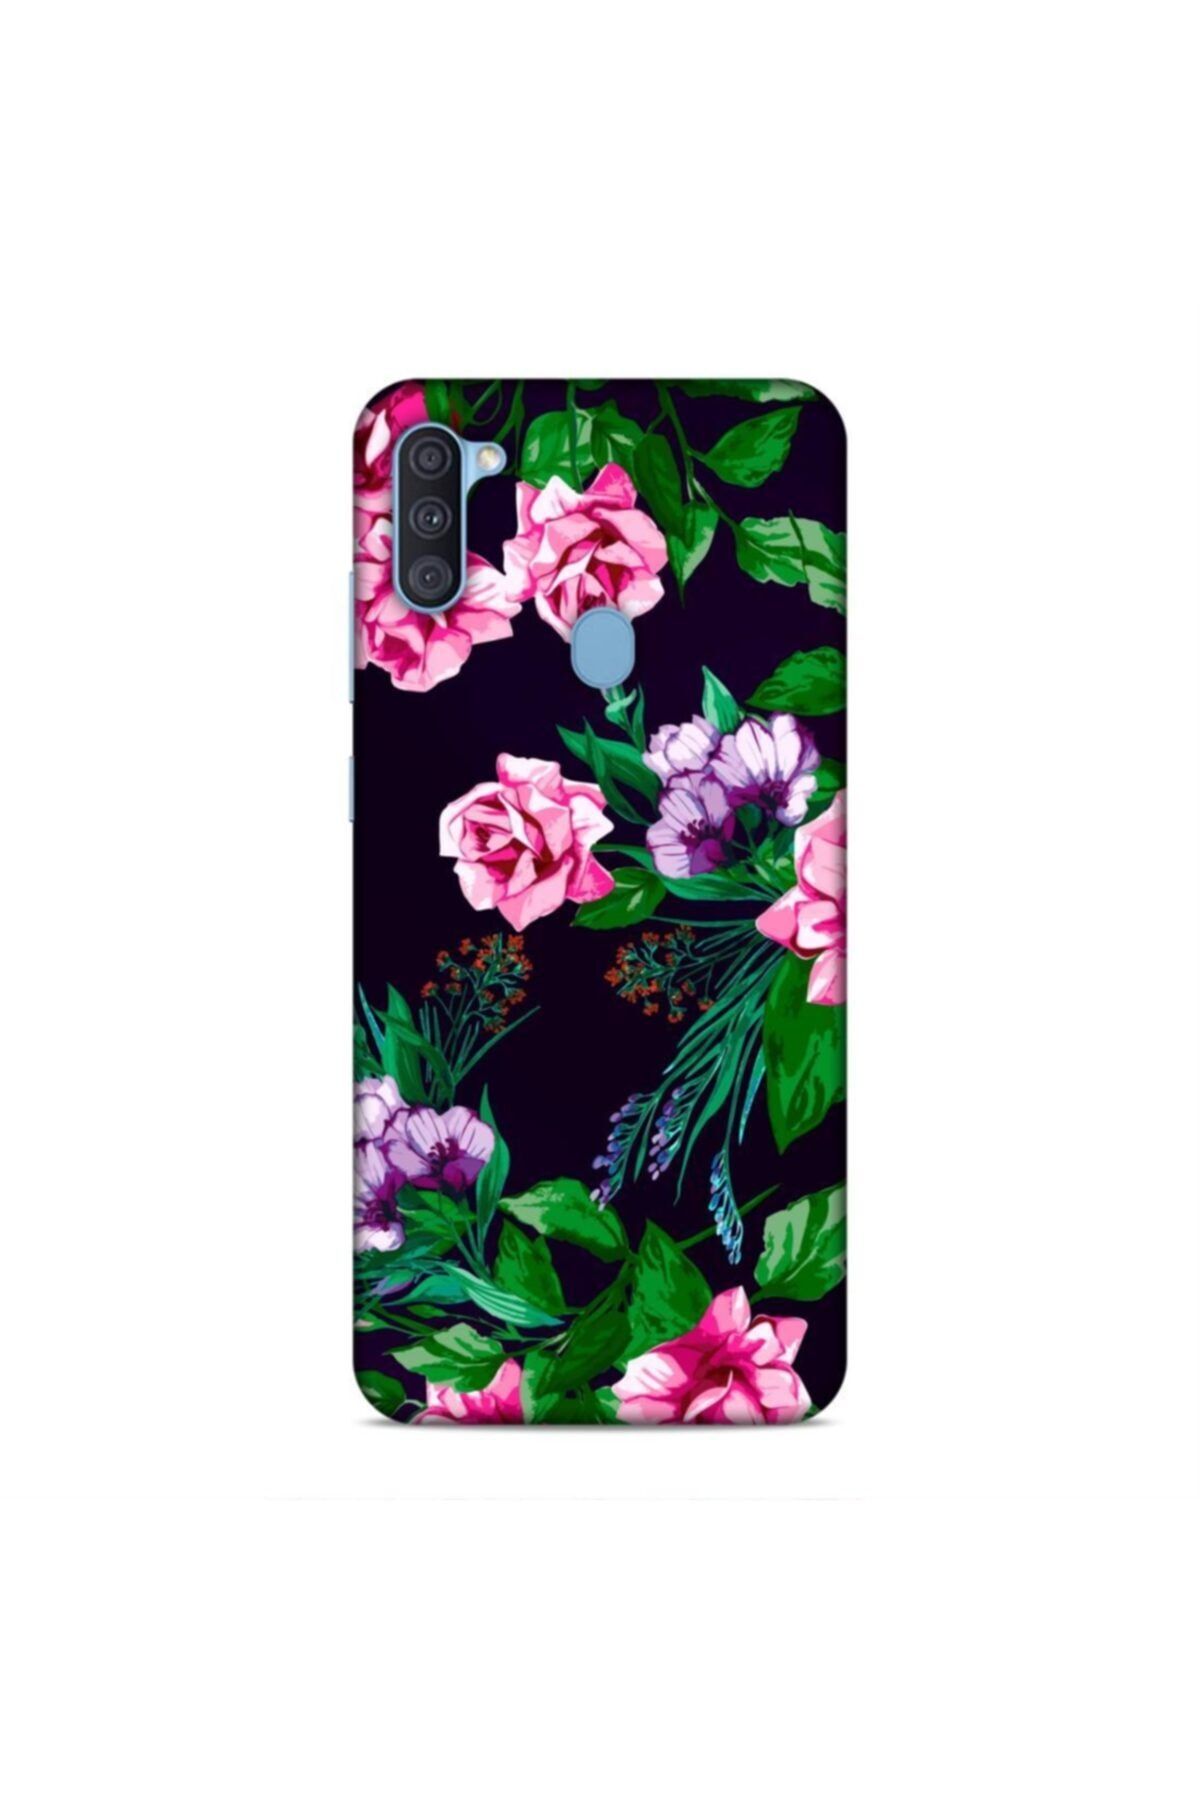 Pickcase Samsung Galaxy A11 Kılıf Desenli Arka Kapak Pembe Çiçekler